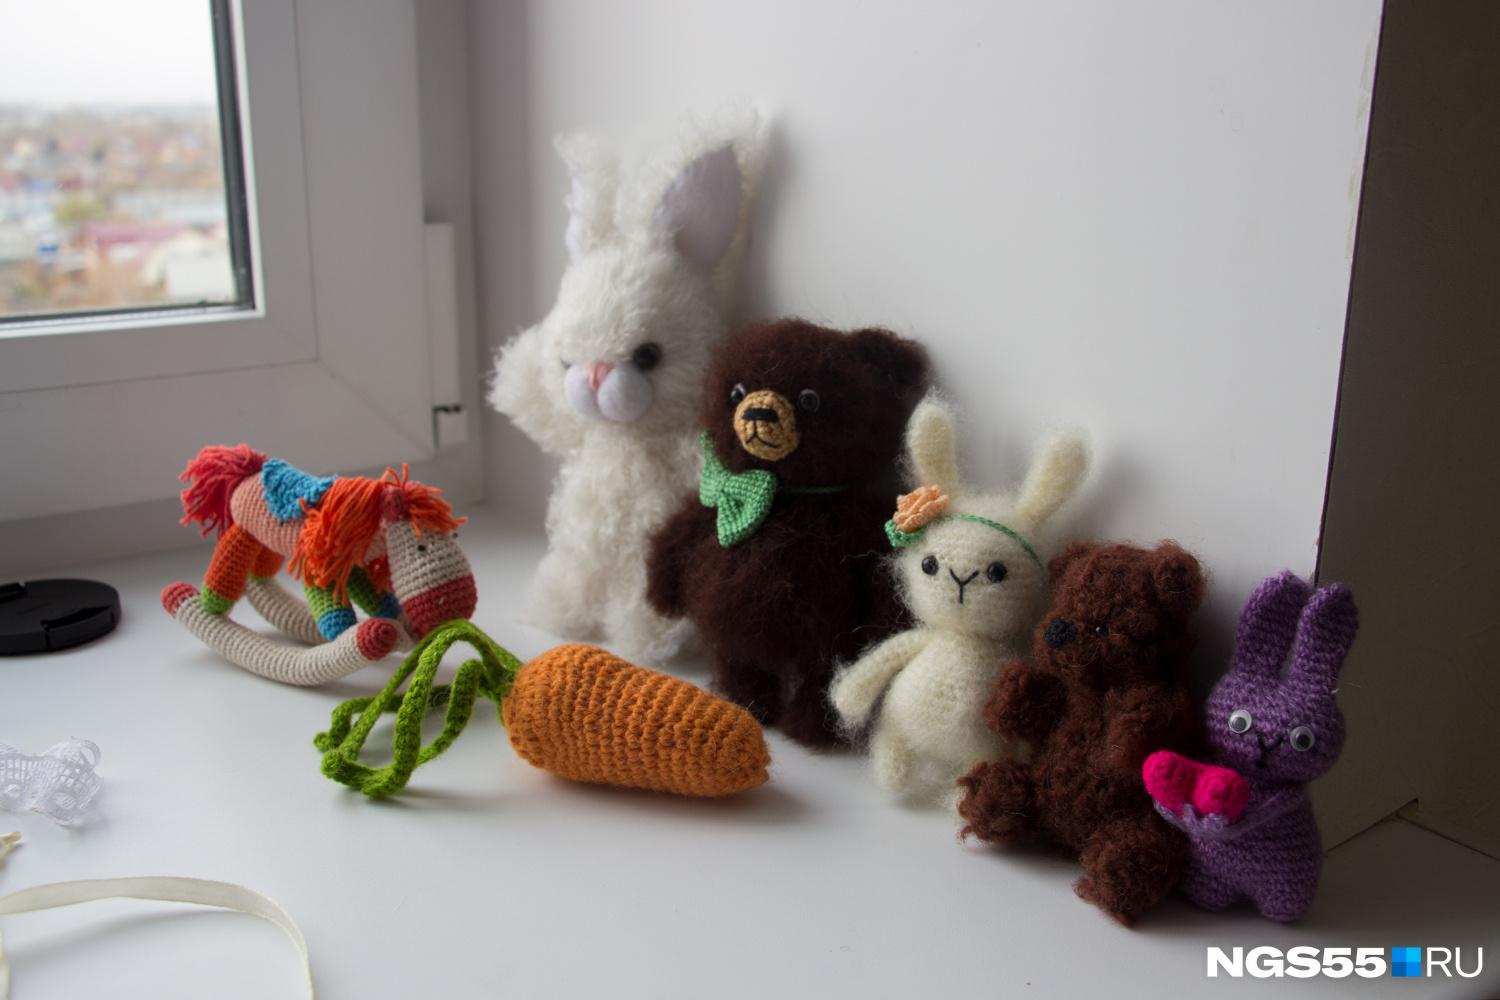 Мягкие игрушки становятся дополнением сказочной фотосессии для маленьких детей